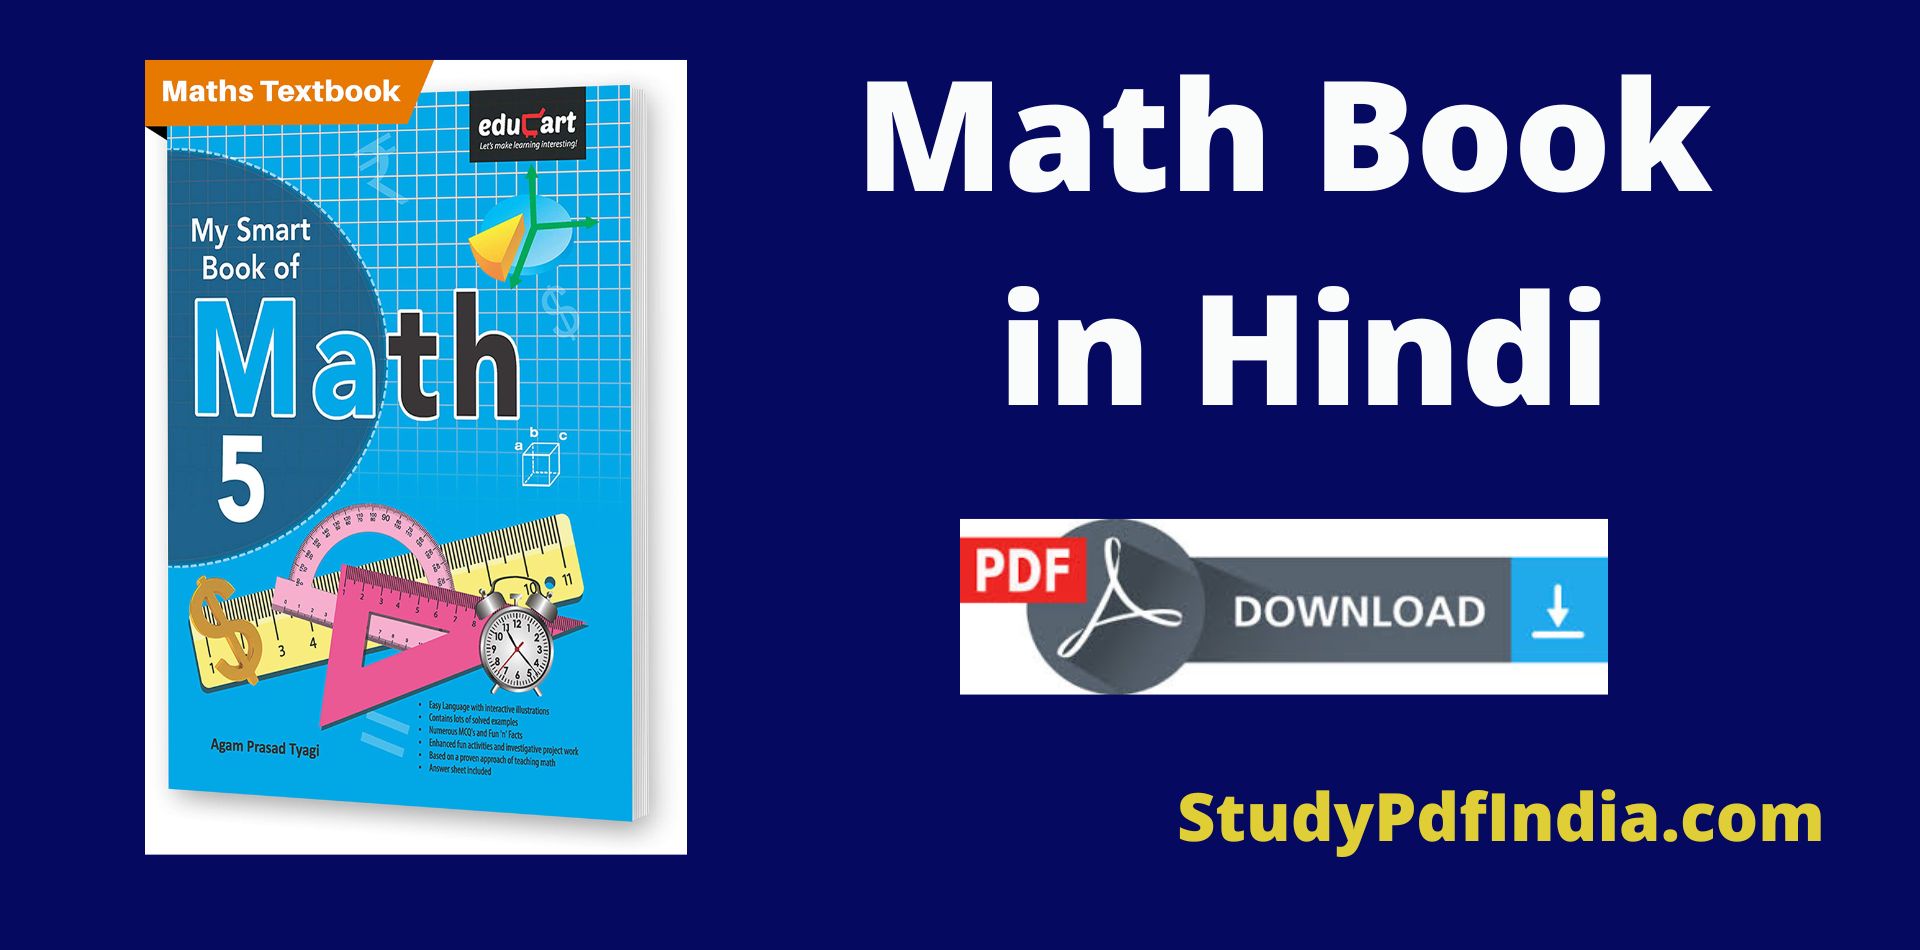 Math Book PDF Download in Hindi